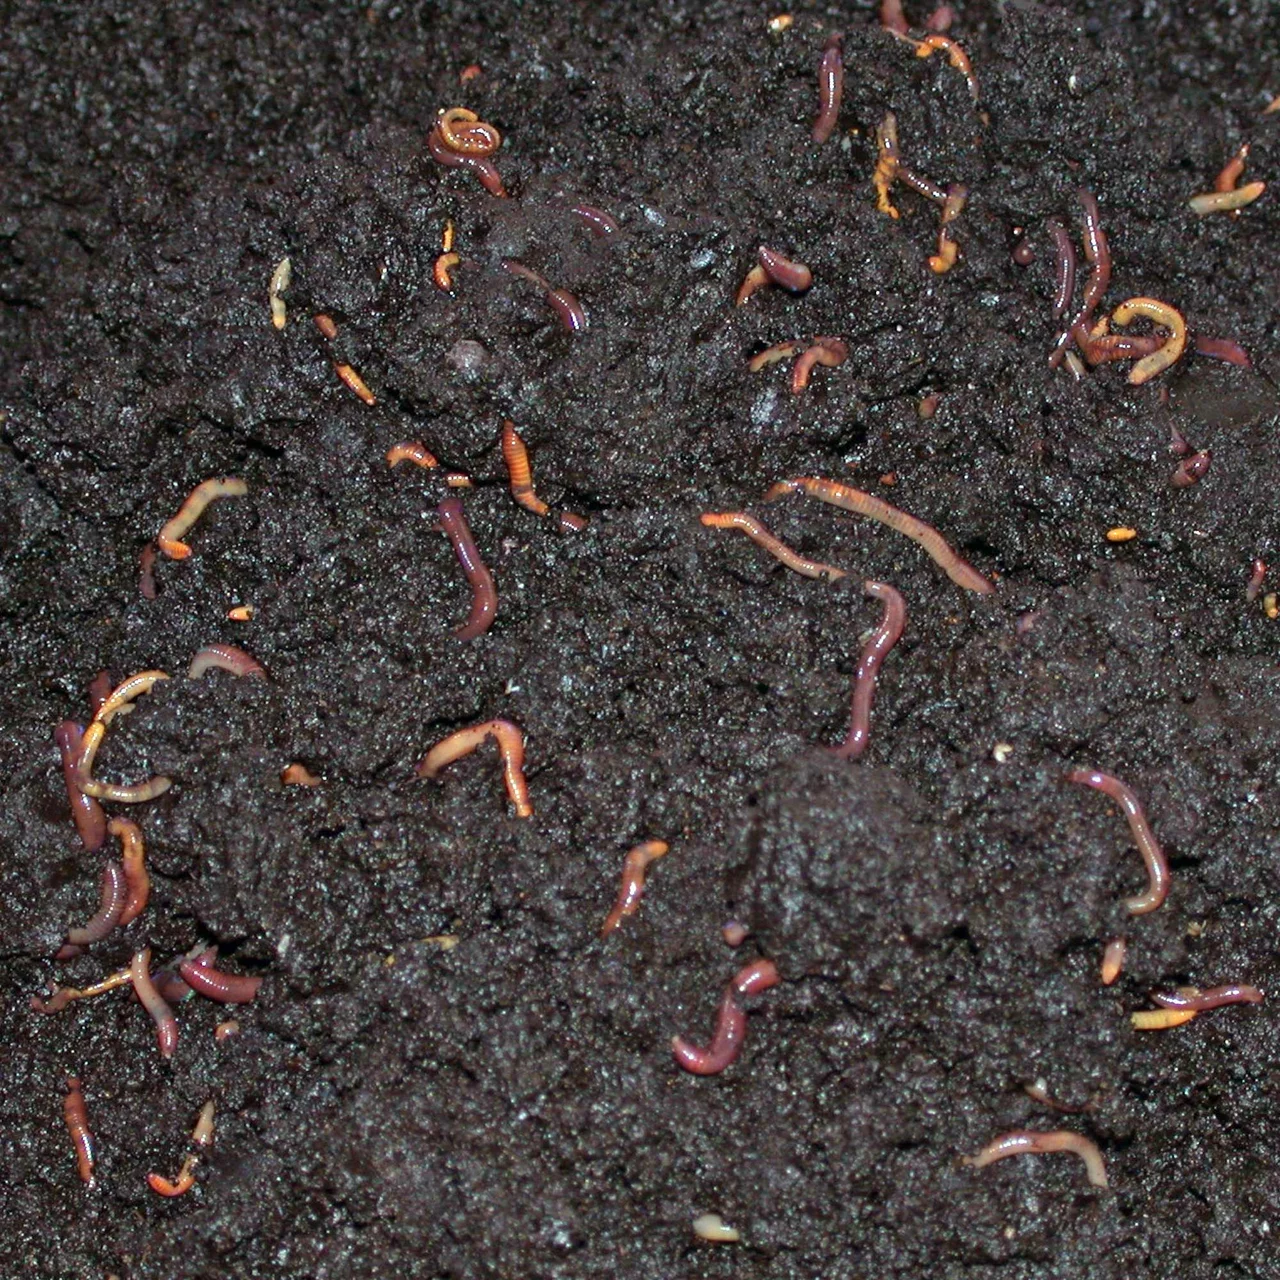 Vers à compost pour le vermicomposteur – Jardinage durable